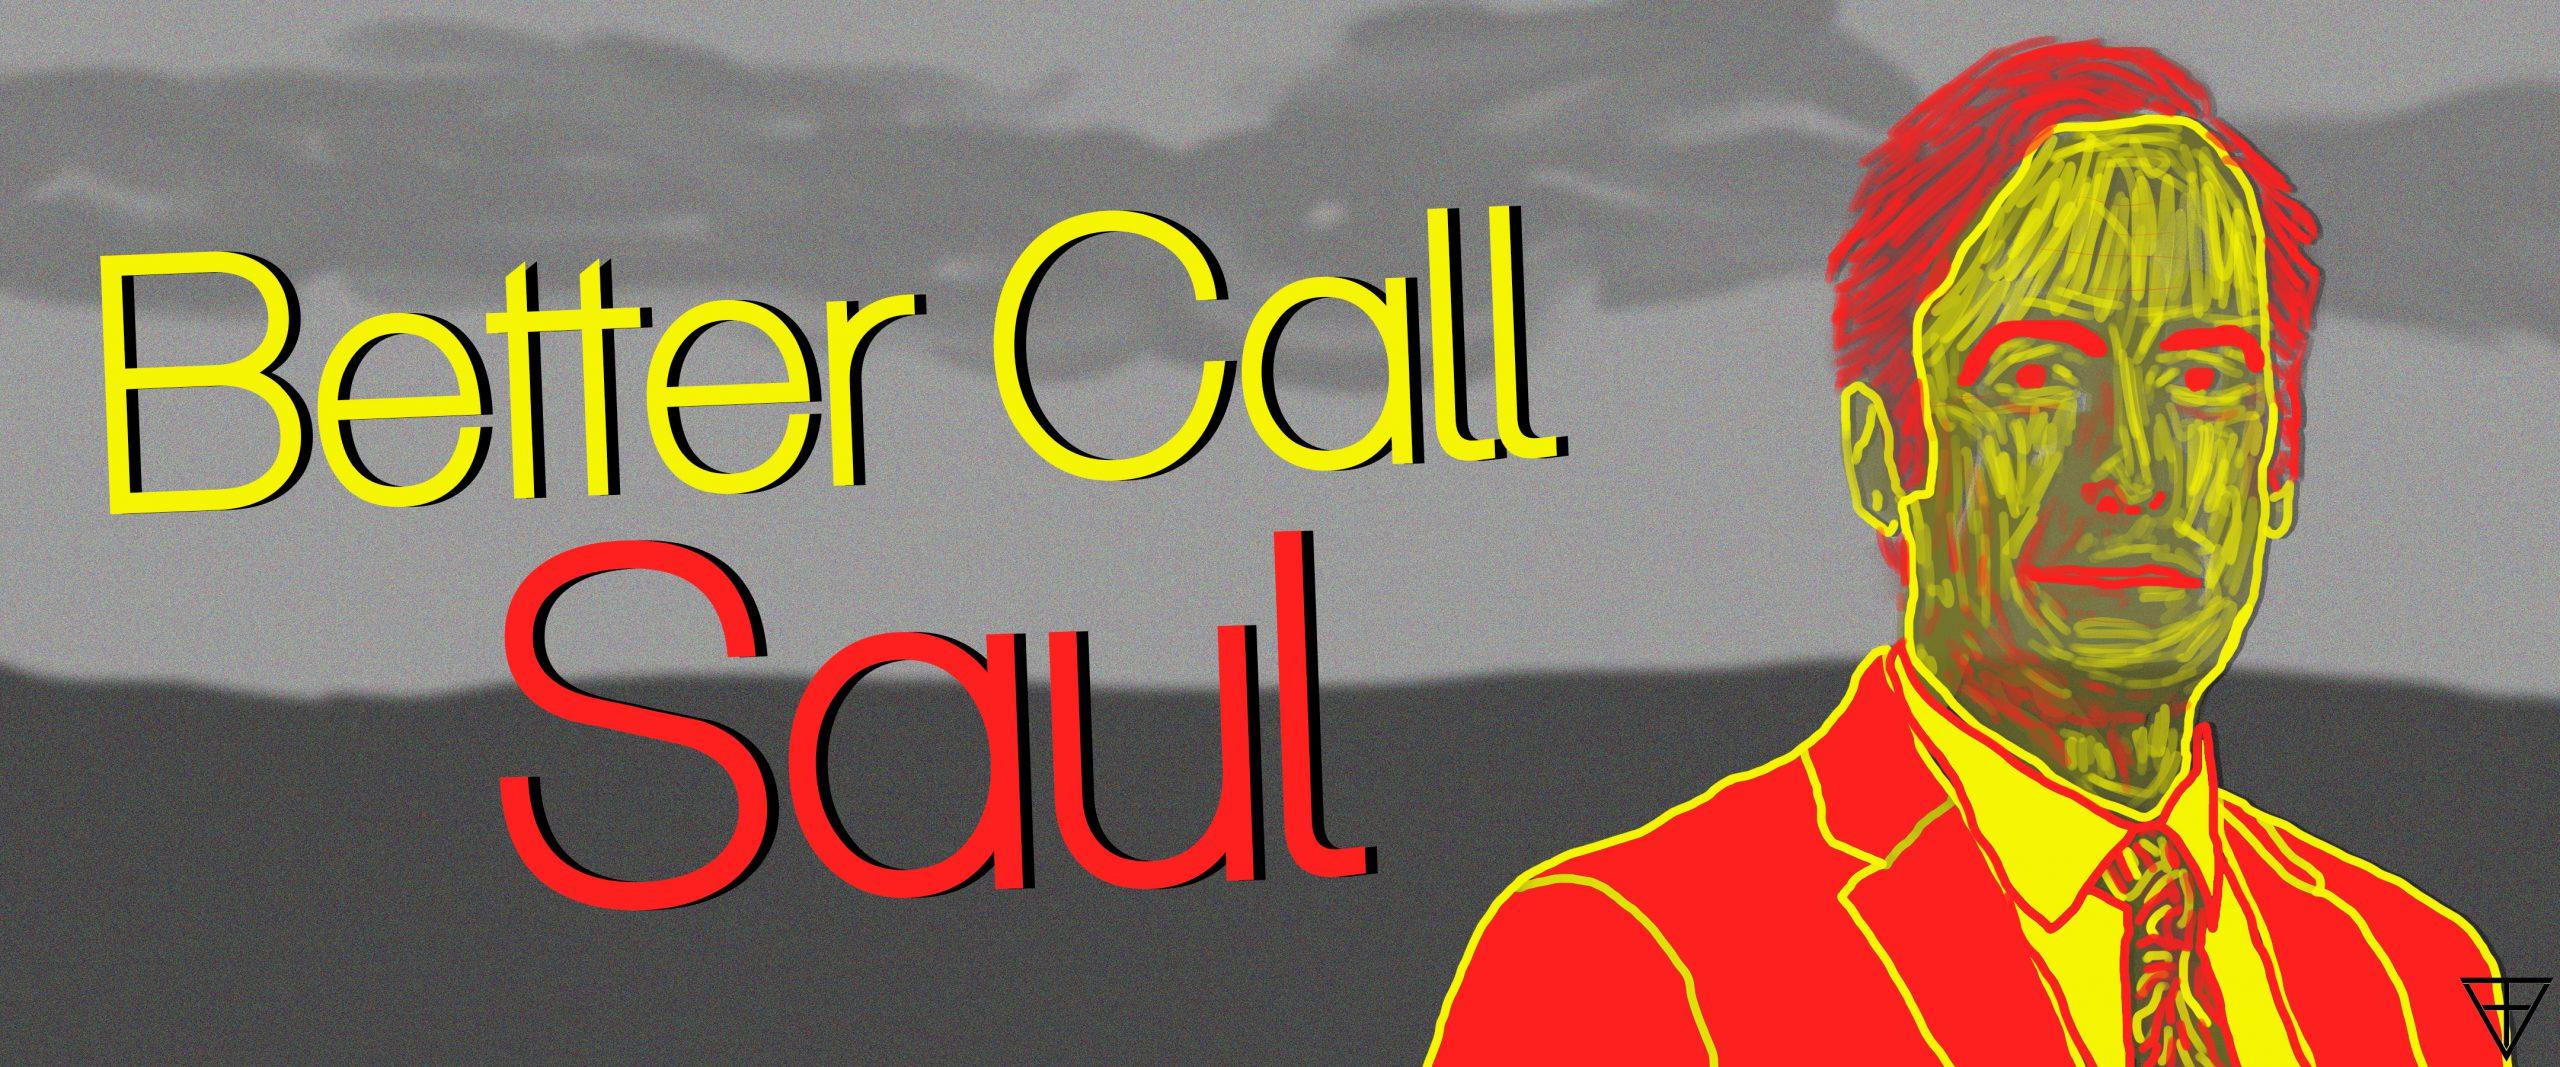 Better Call Saul 1